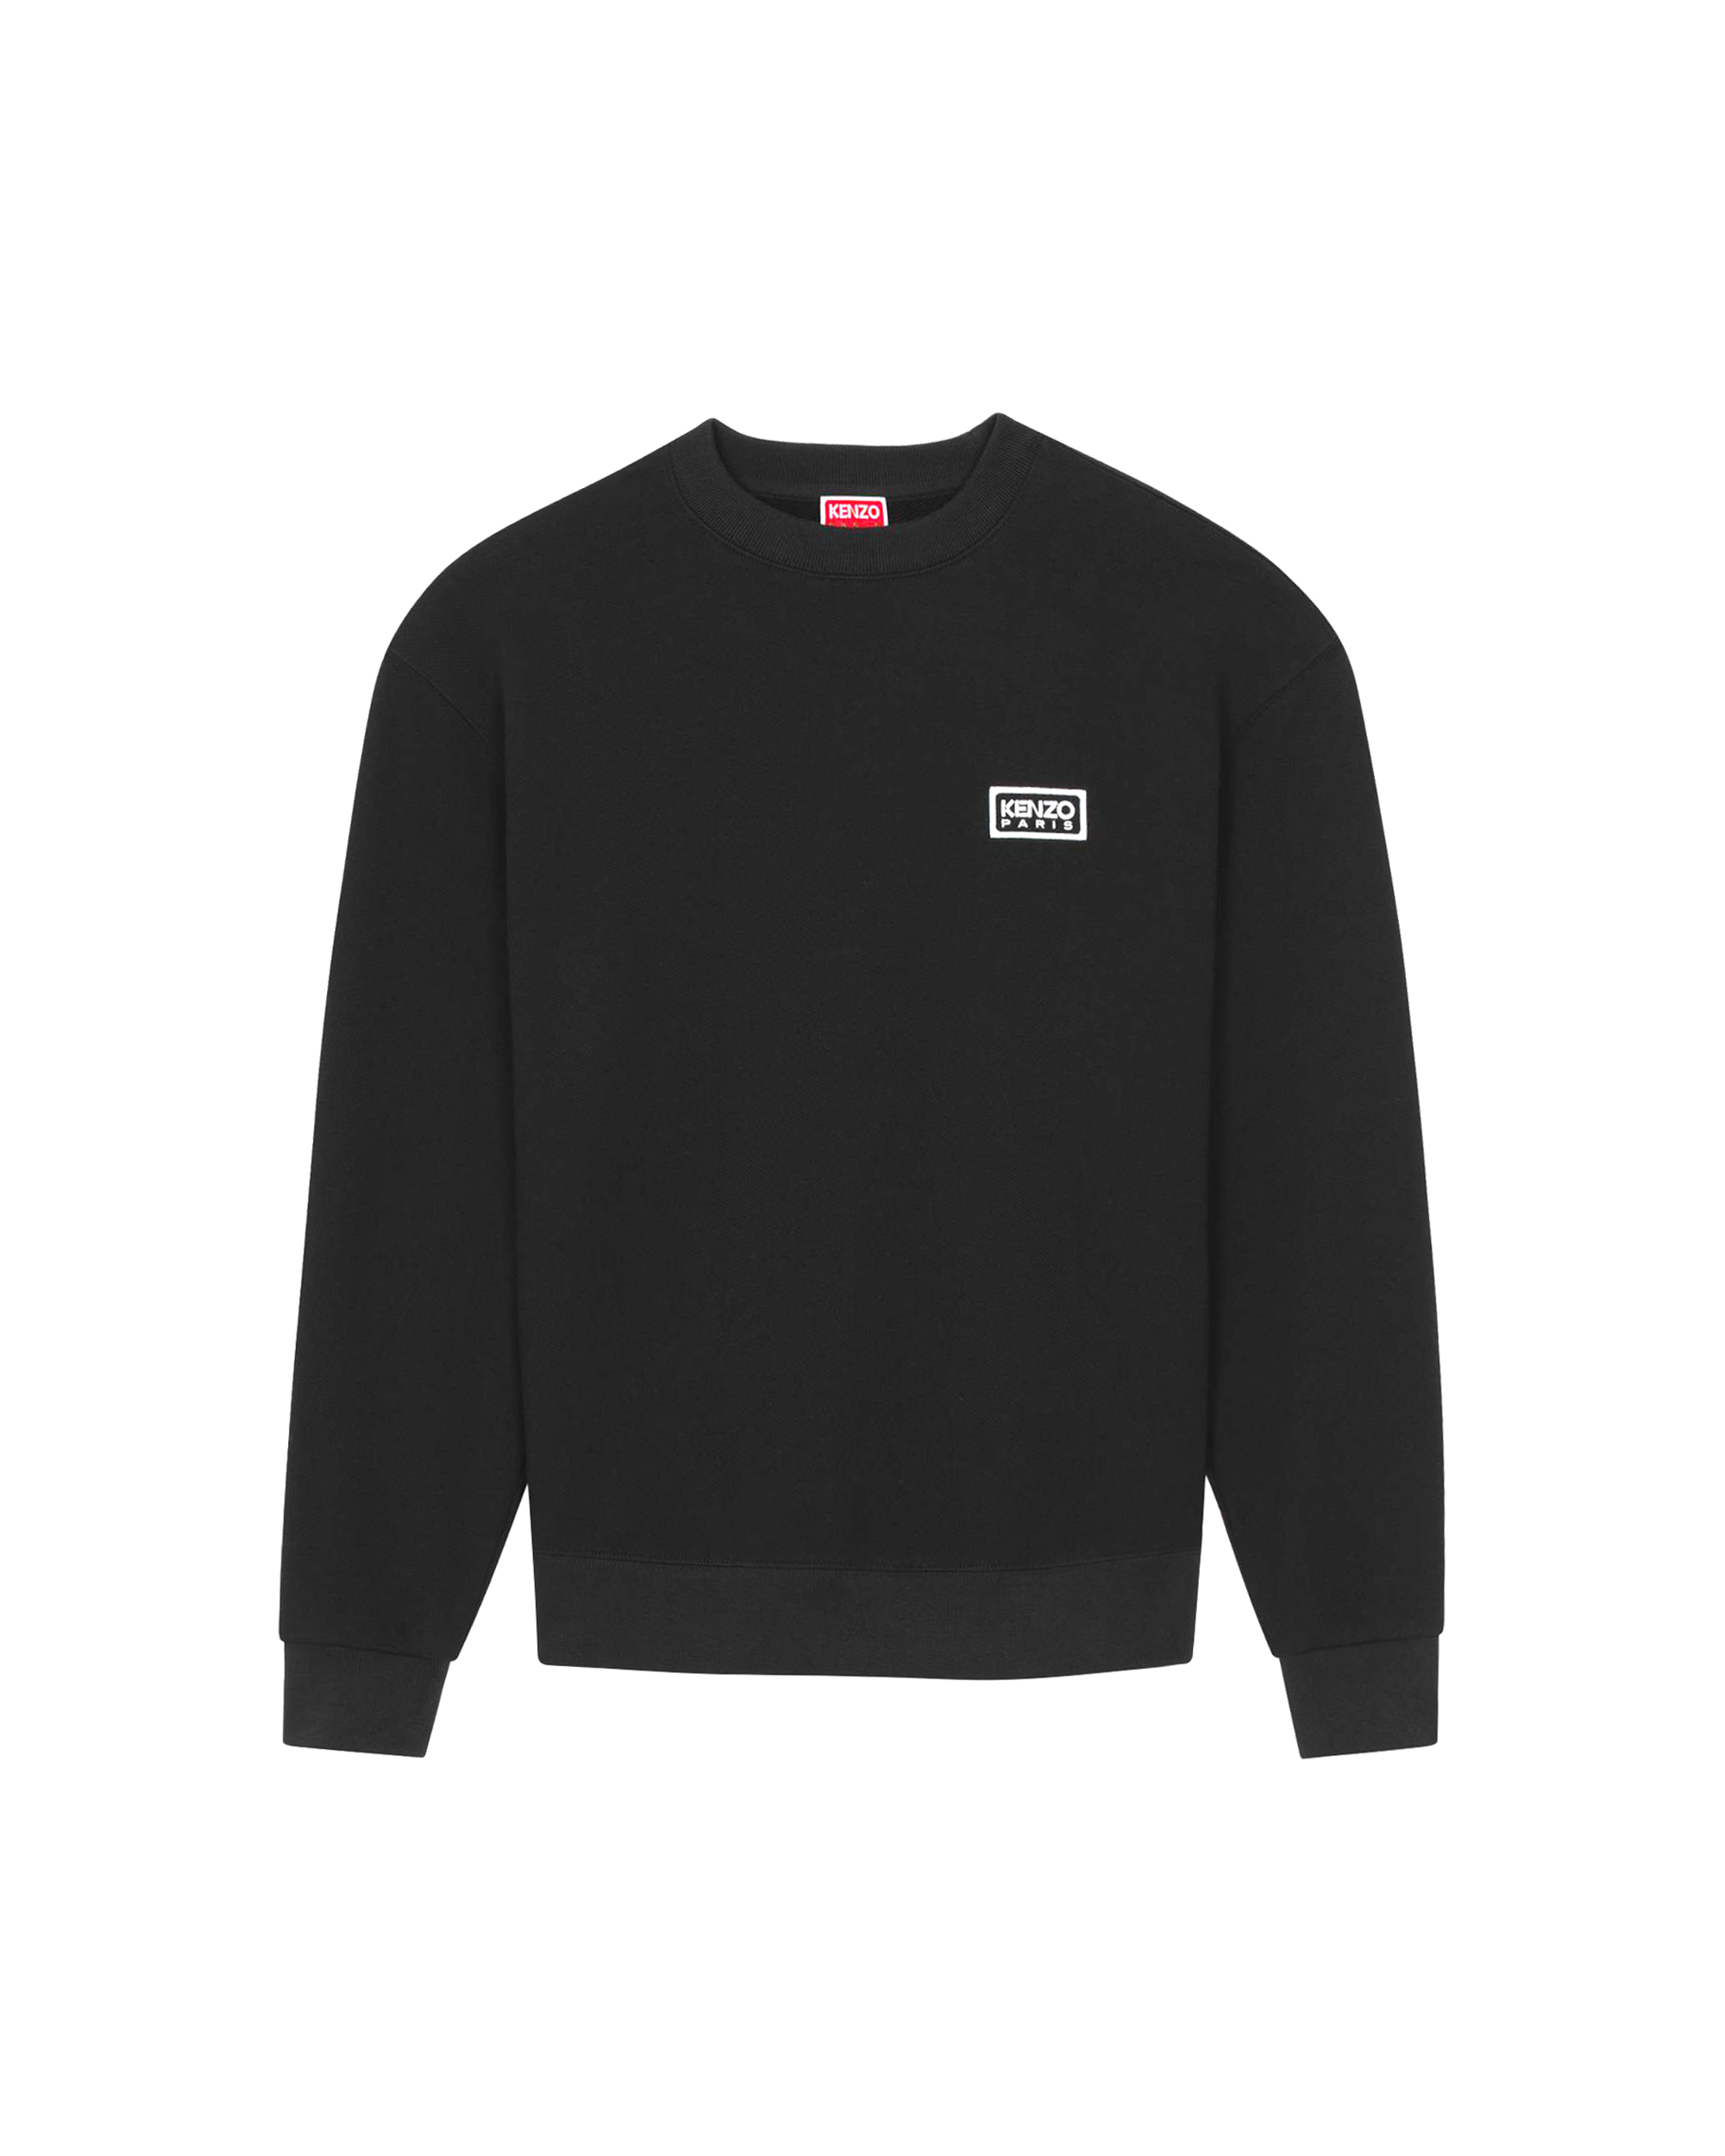 Kenzo Sweatshirt Classique Brodé 'bicolor Paris' Homme Noir In Black